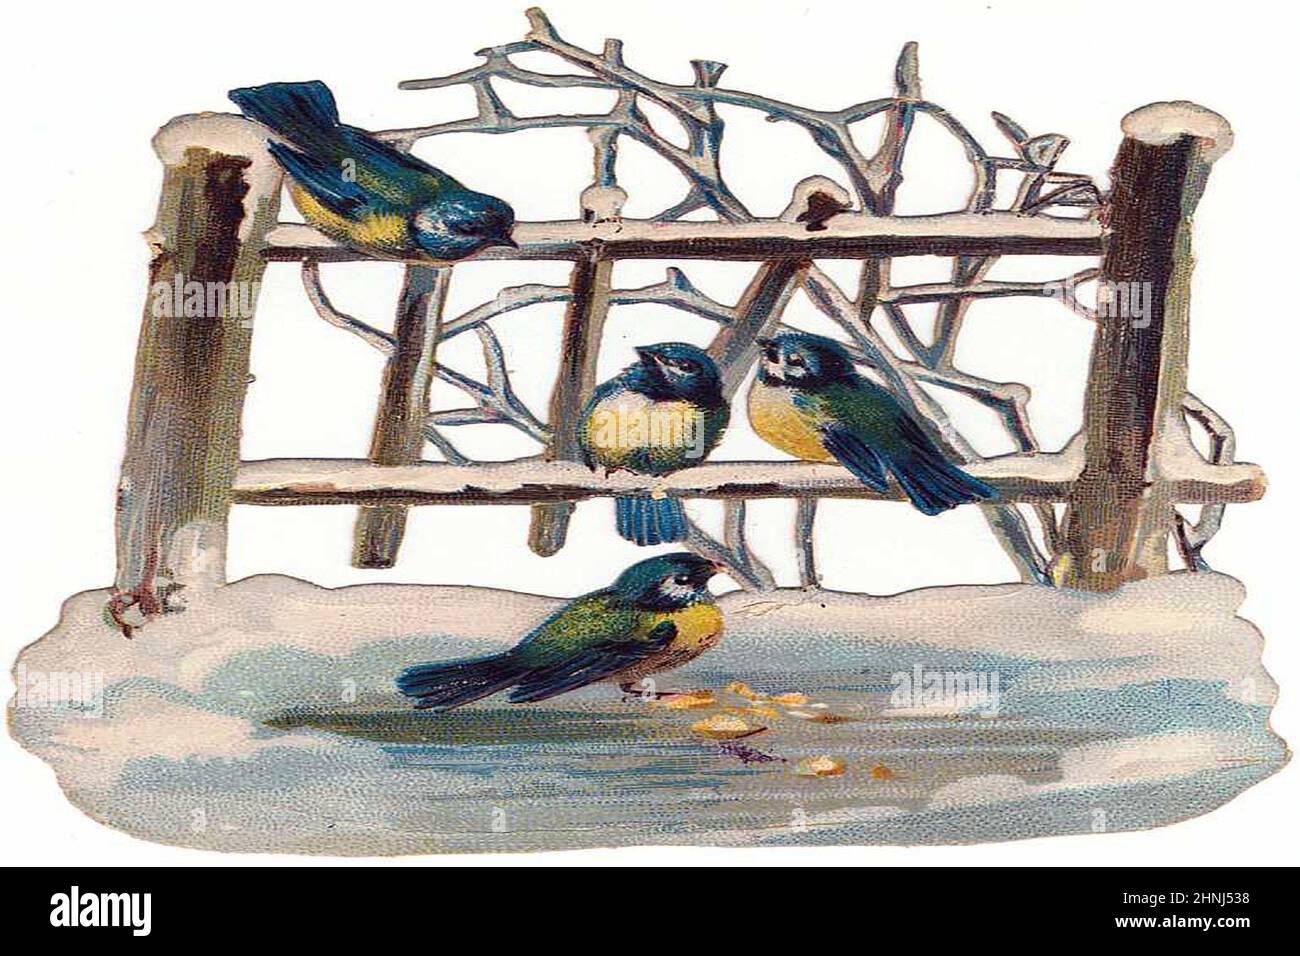 Illustrazioni di uccelli vittoriani d'epoca Foto Stock